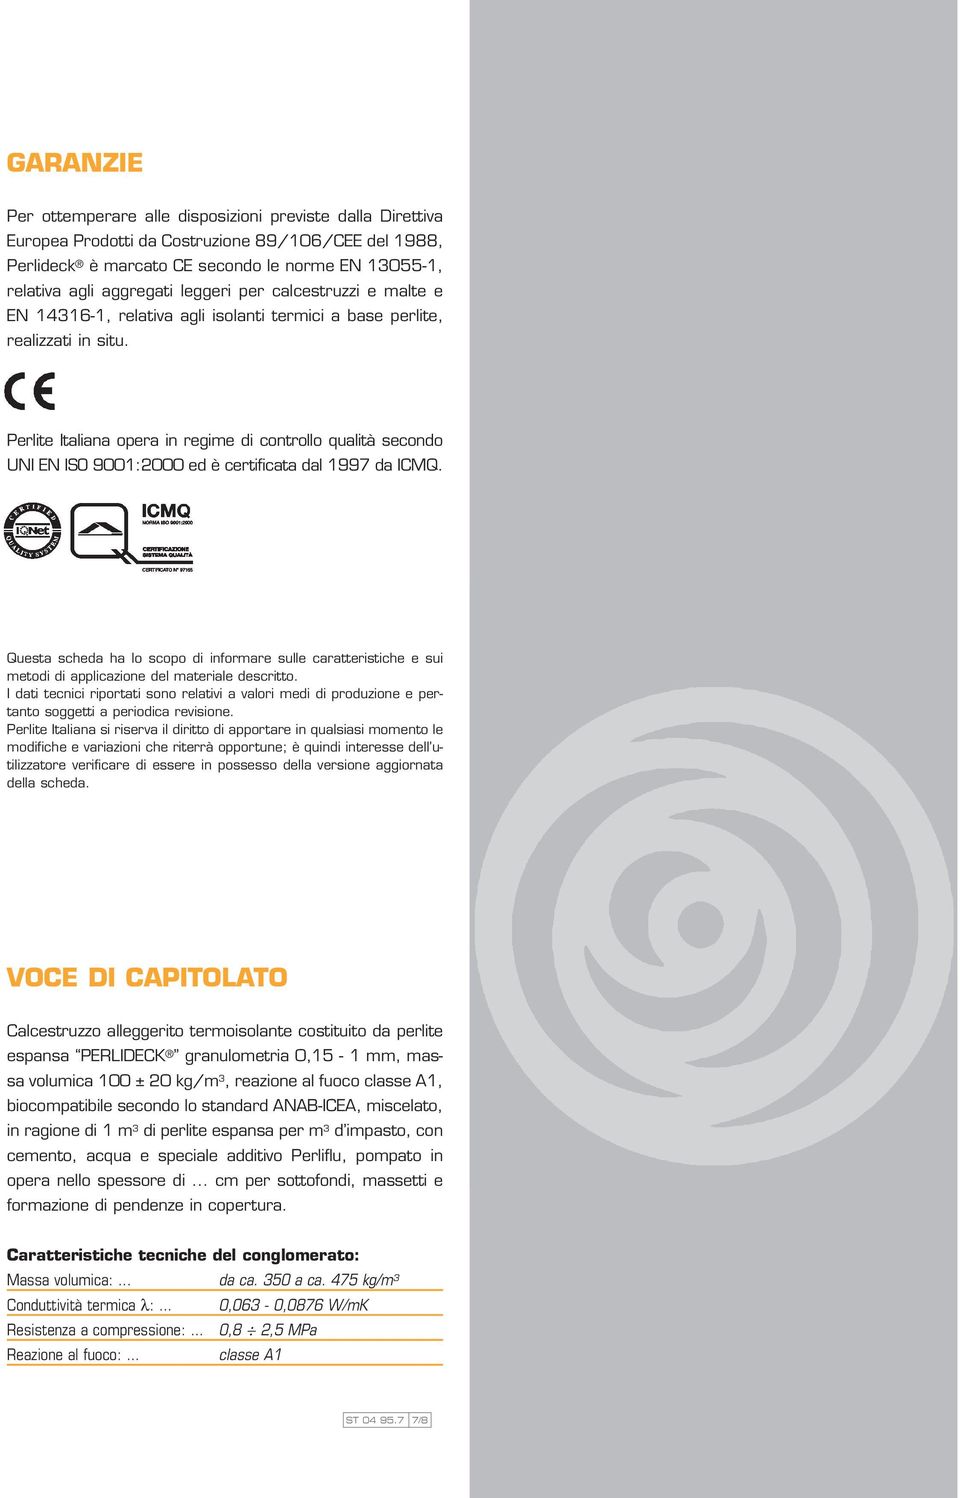 Perlite Italiana opera in regime di controllo qualità secondo UNI EN ISO 9001:2000 ed è certificata dal 1997 da ICMQ.